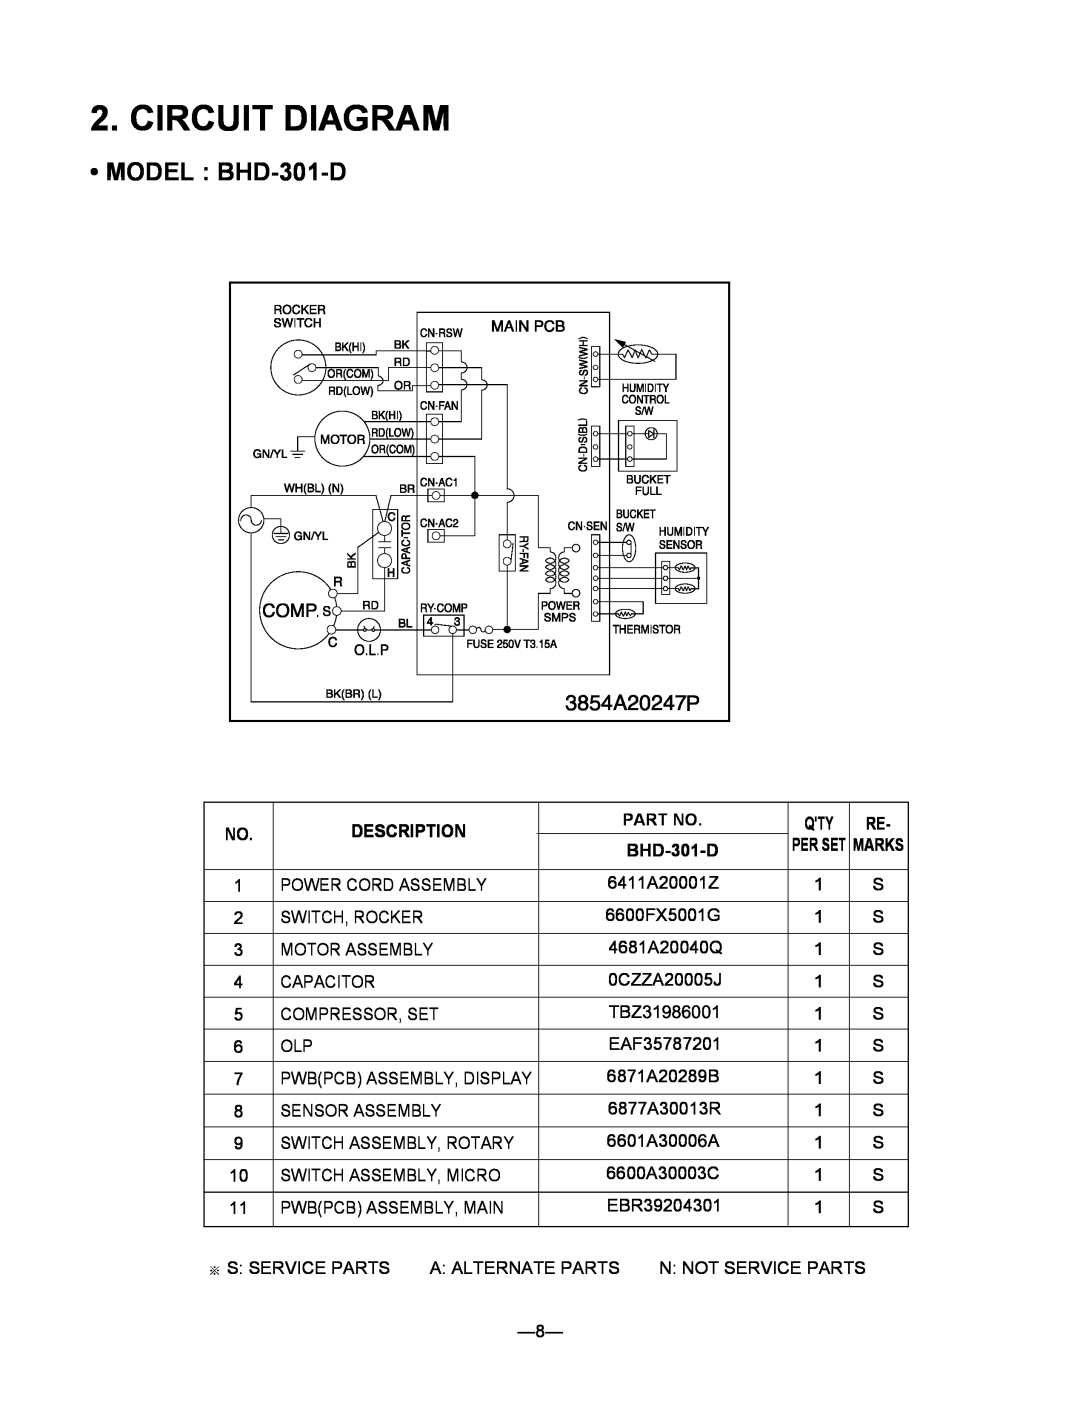 Heat Controller BHD-501-D, BHD-651-D service manual Circuit Diagram, MODEL BHD-301-D, Description 